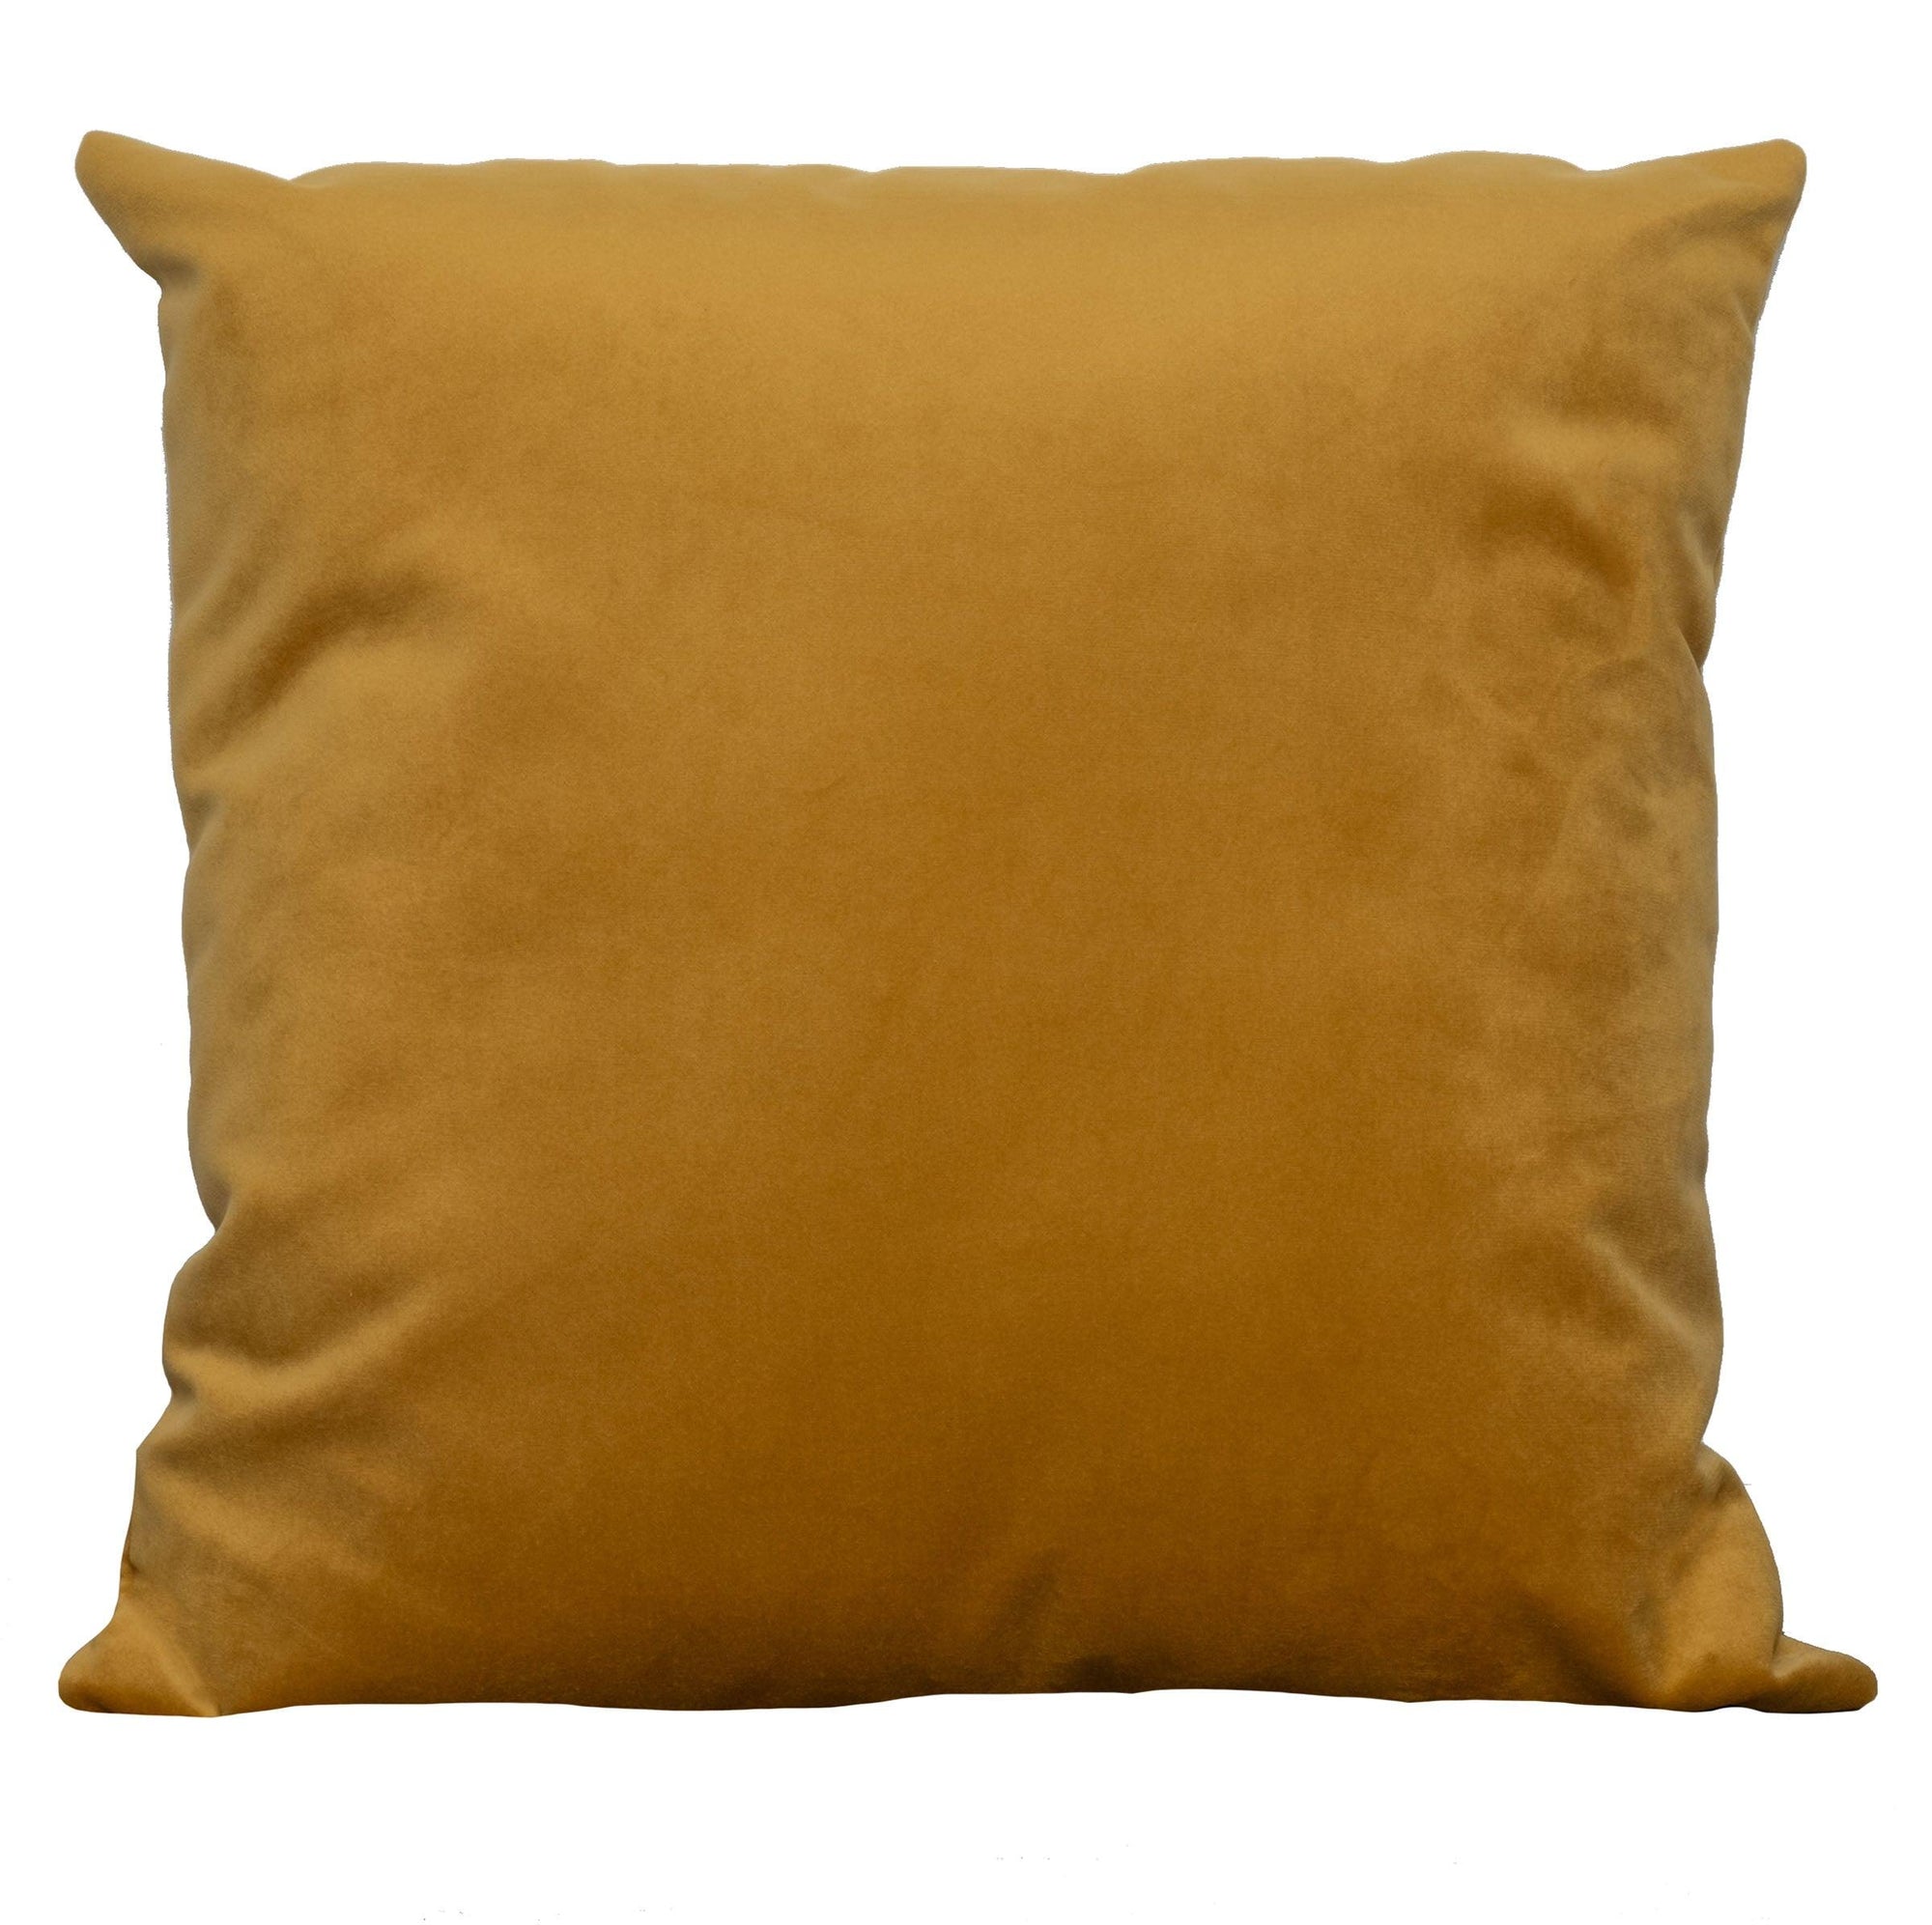 Mustard Velvet Pillow 18x18"